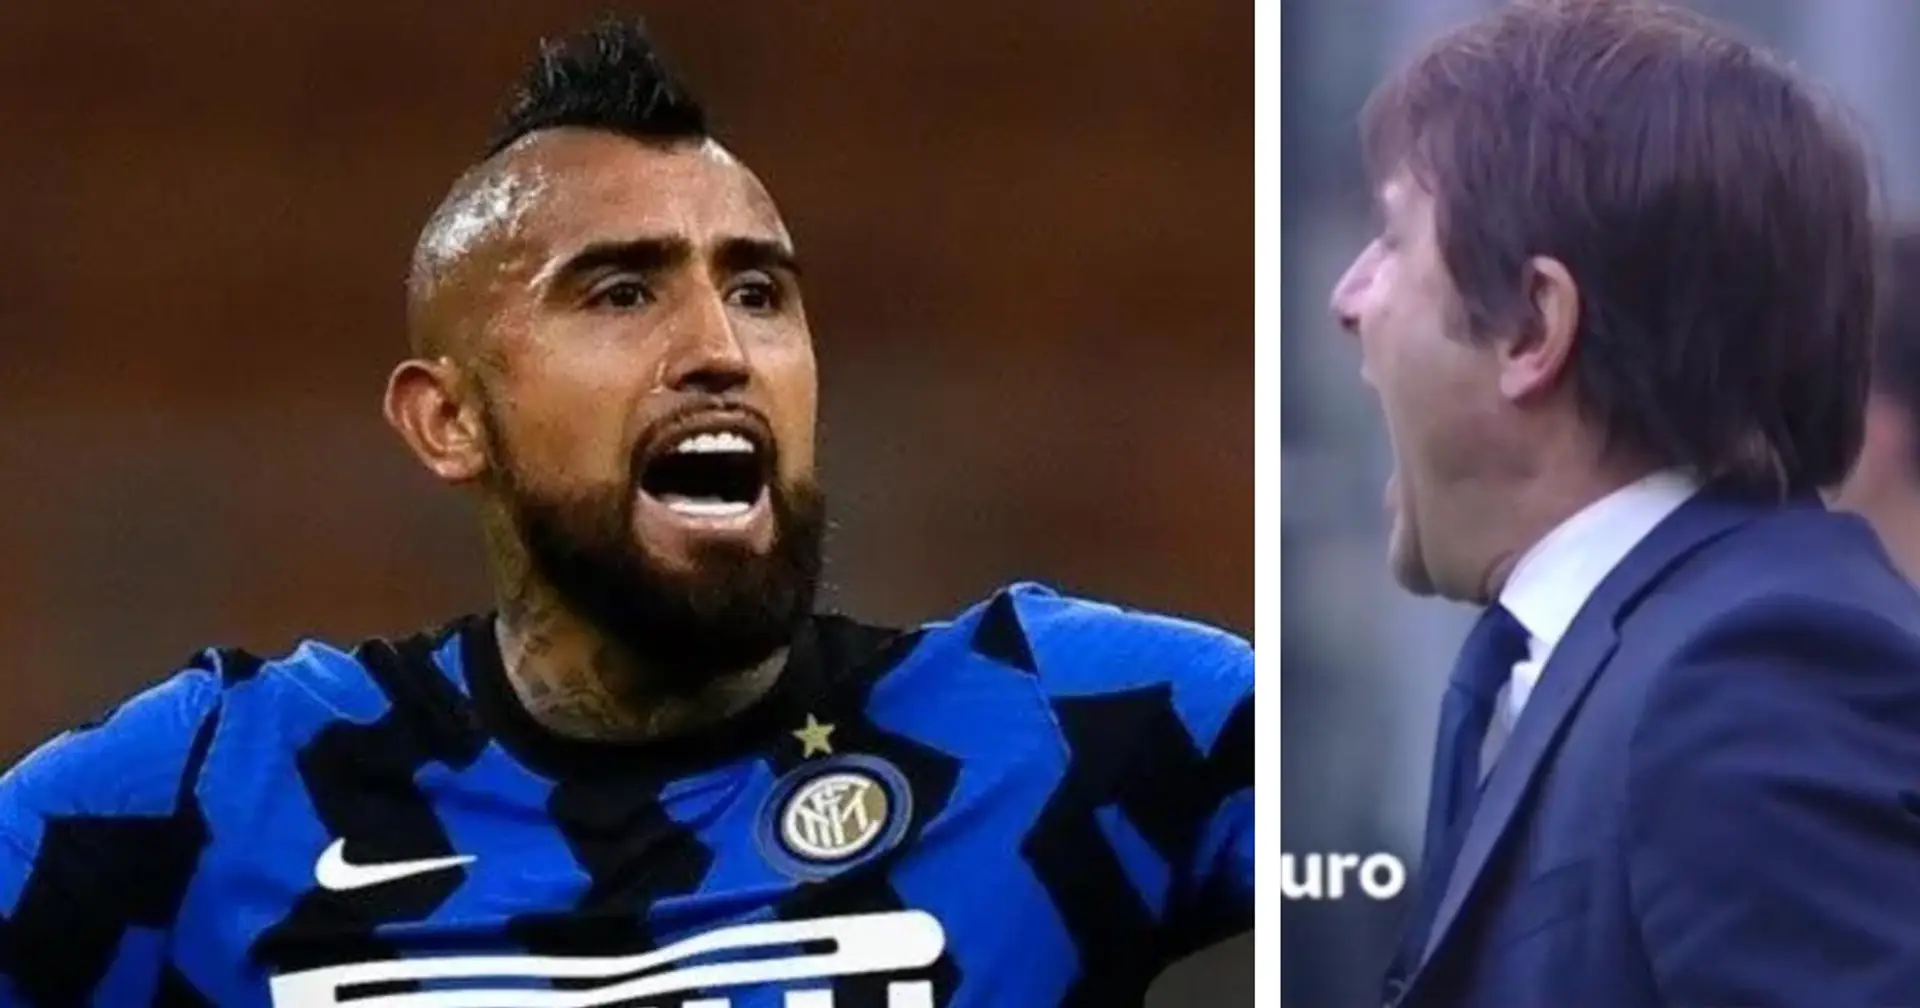 "Arturo, spielen und abhauen!": Antonio Conte schießt öffentlich gegen Vidal, weil er gegen Schiri-Entscheidung protestiert